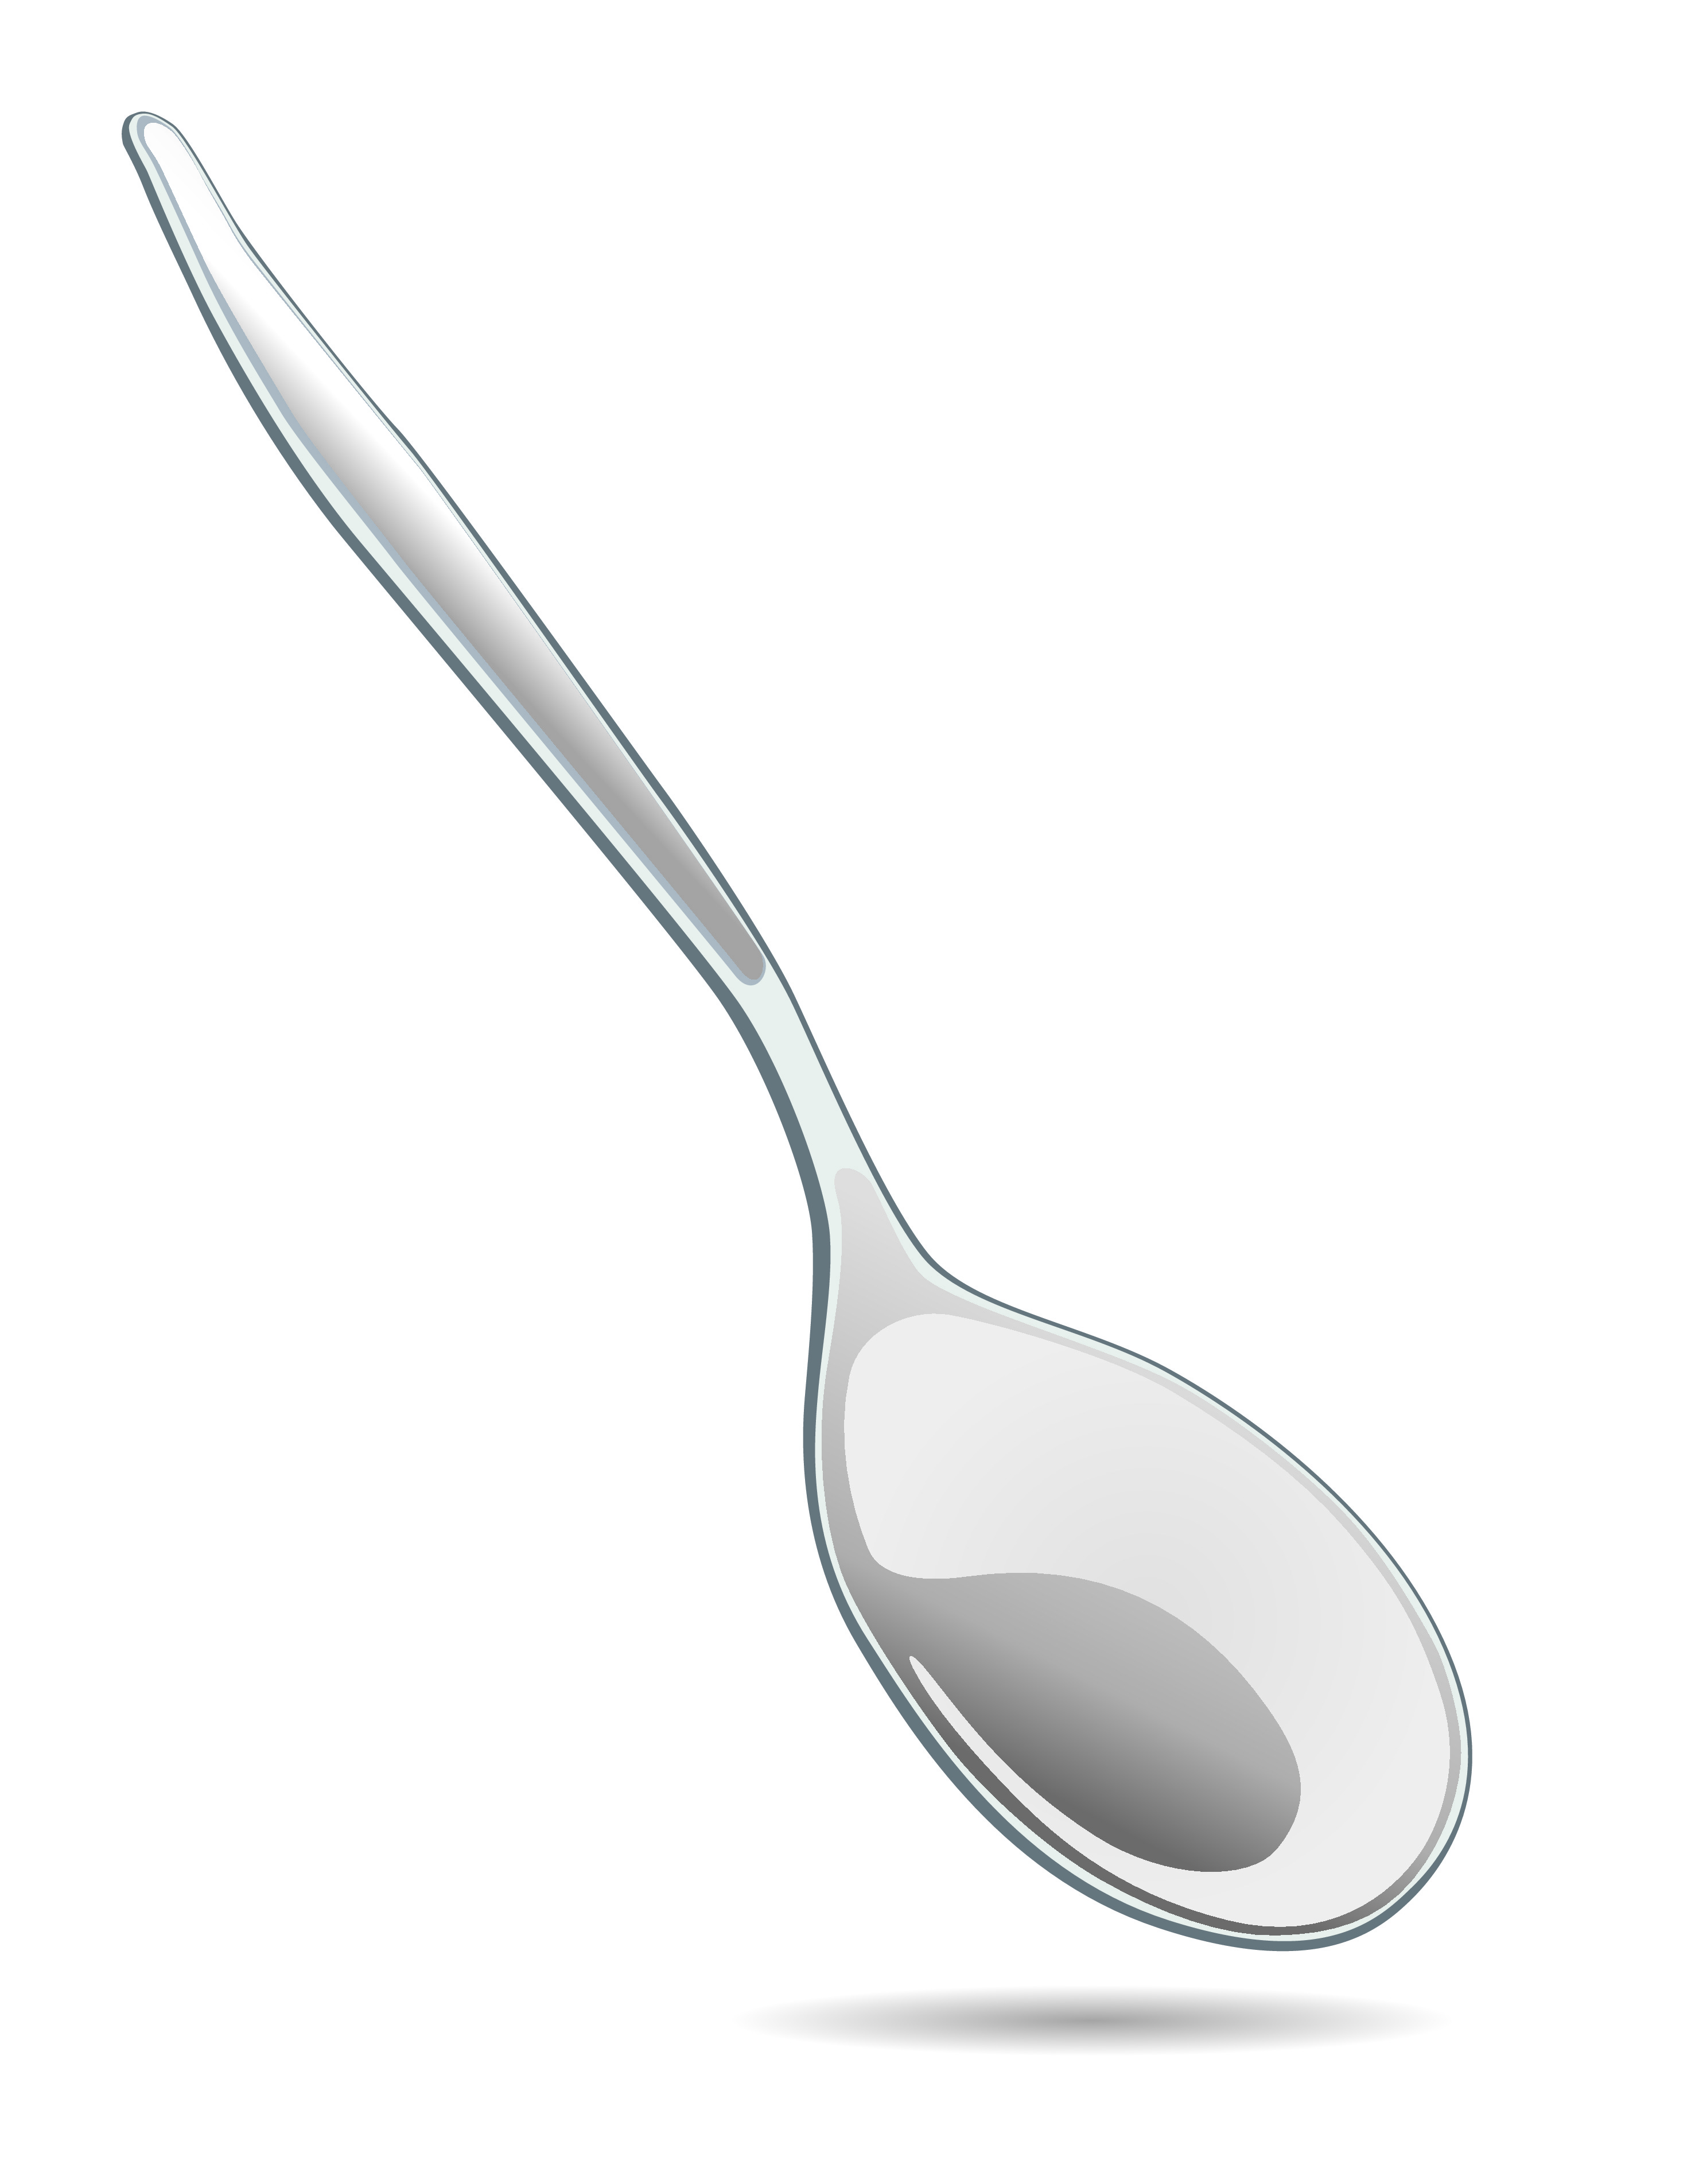 metal spoon